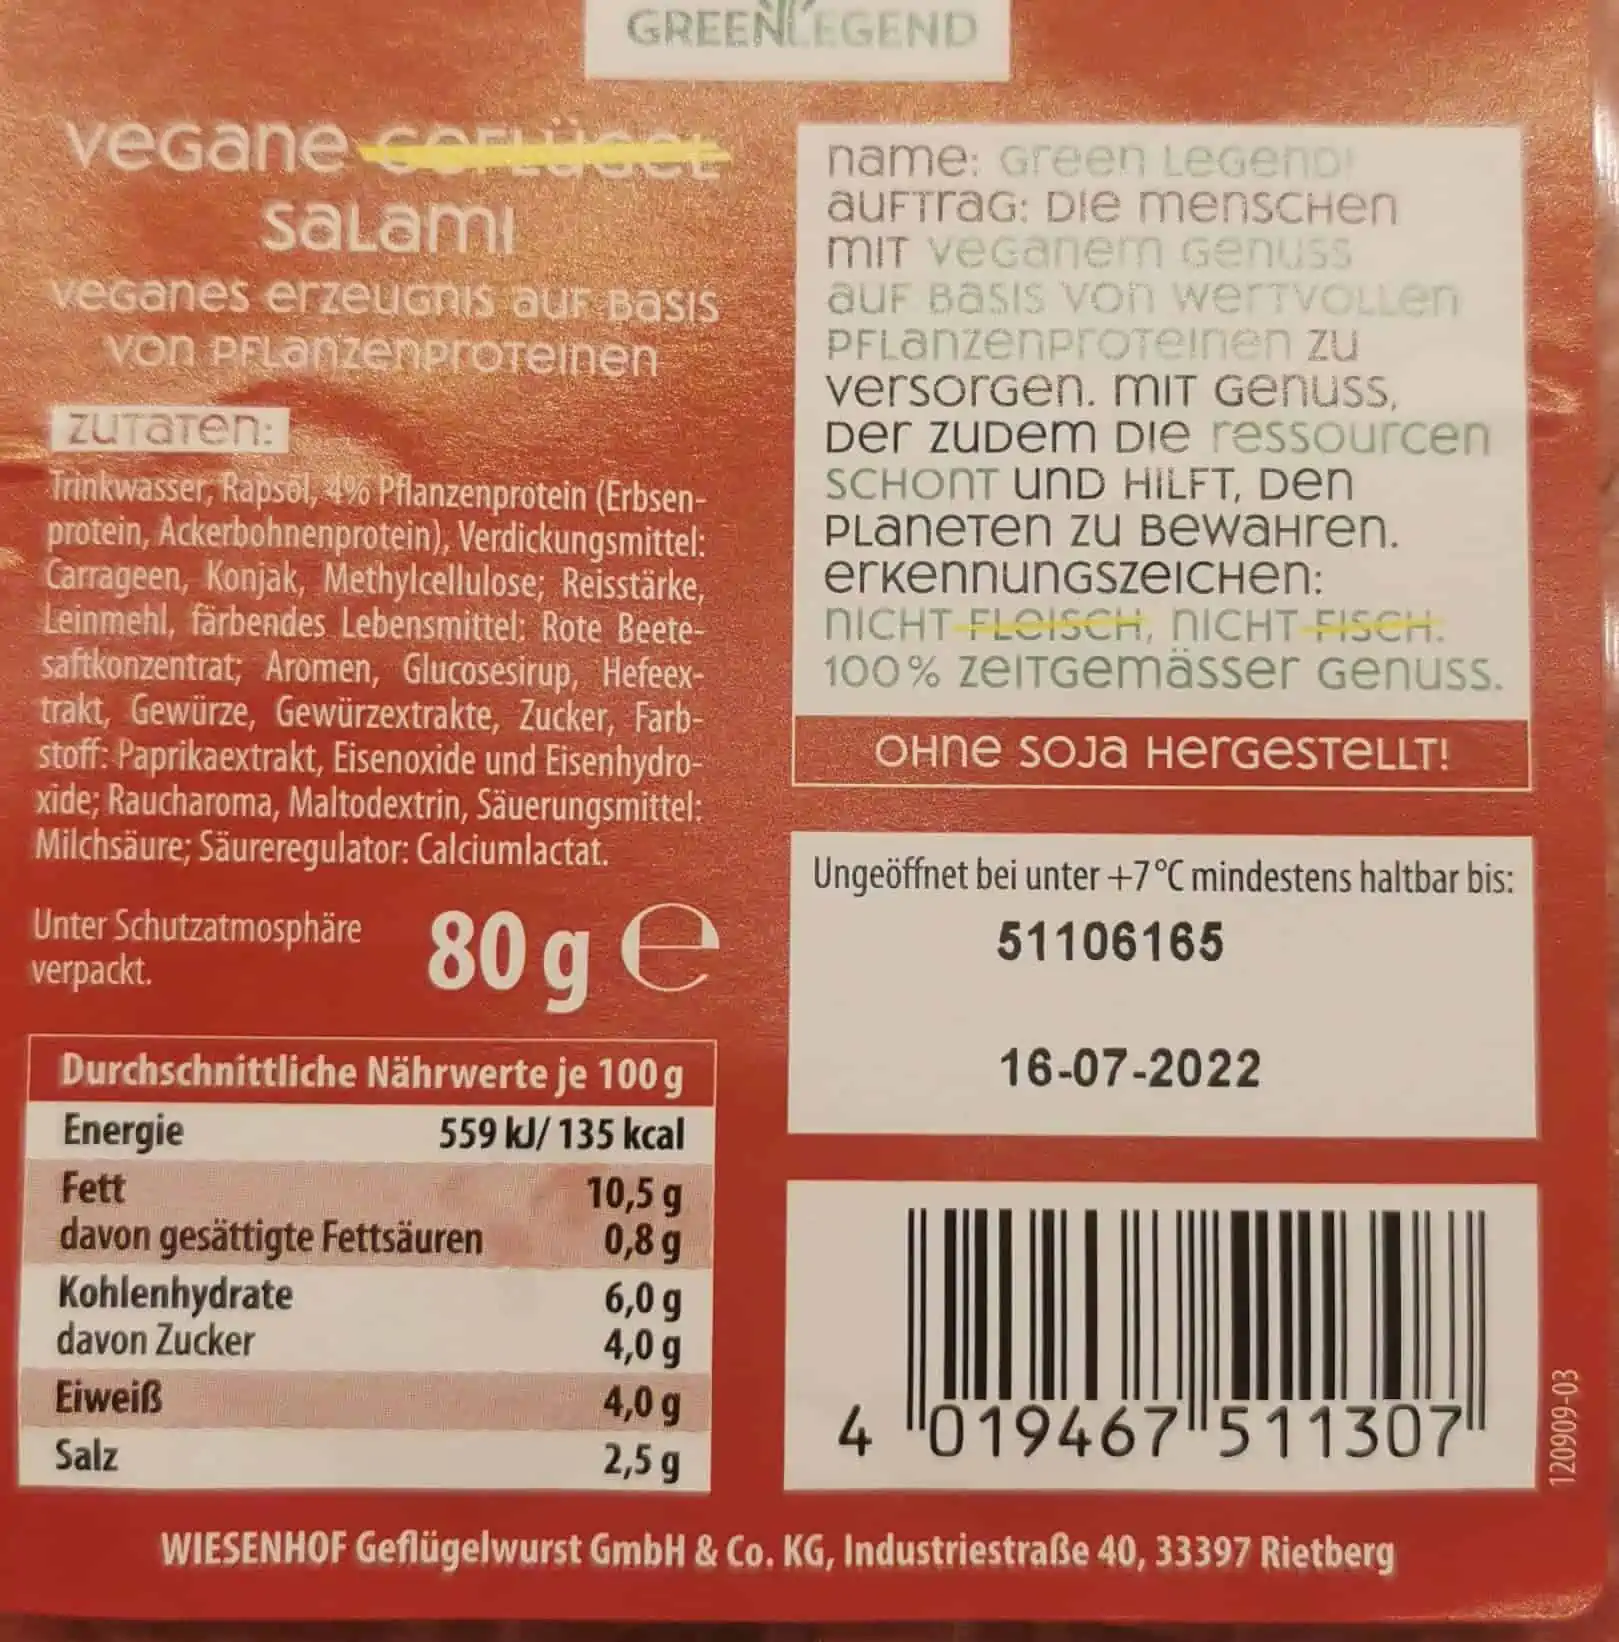 Green Legend - Vegane Salami Inhaltsstoffe und Nährwerte